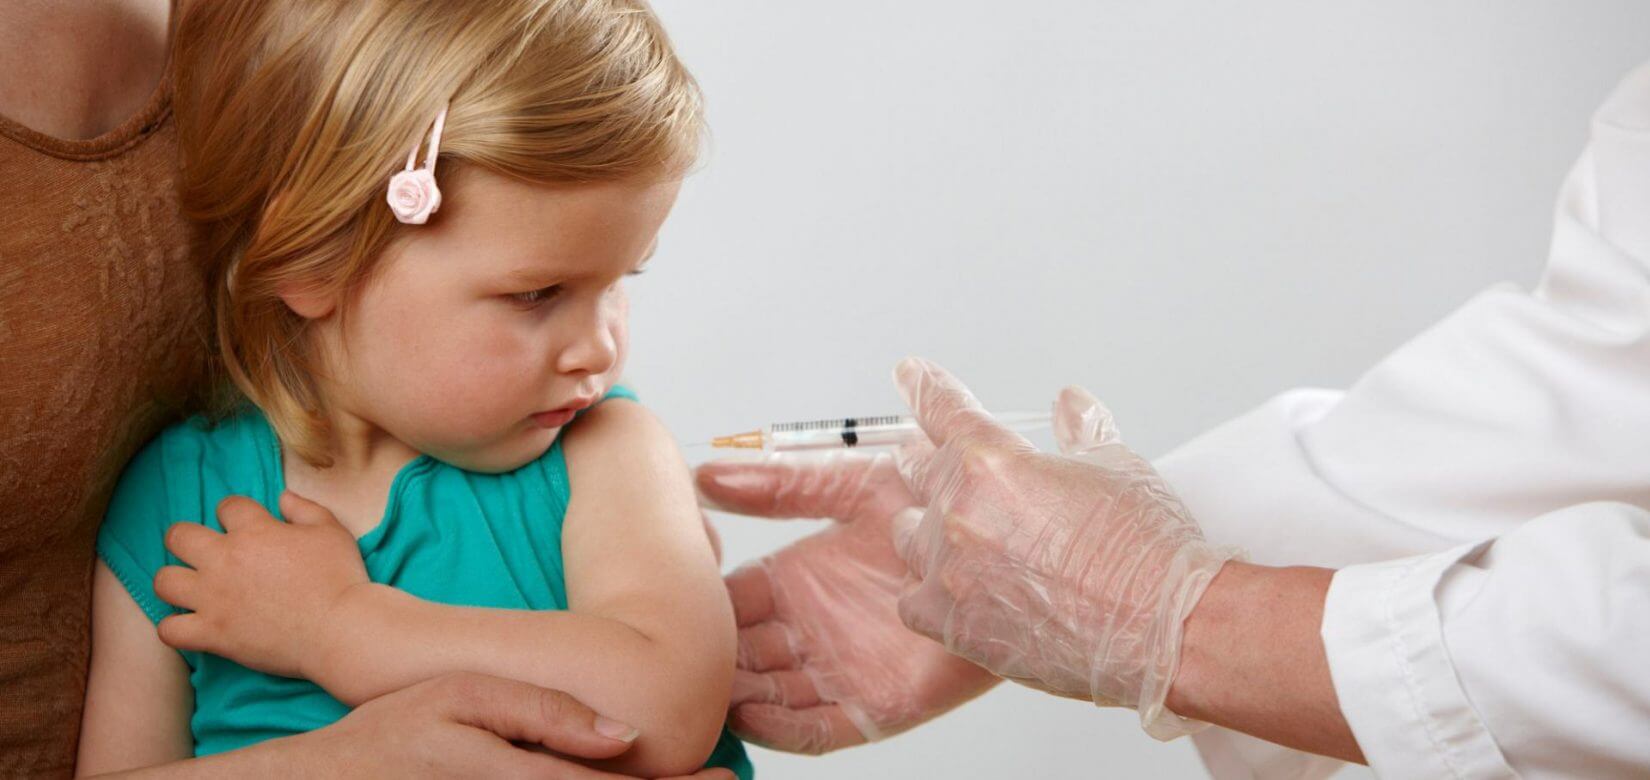 Συναγερμός στο Λονδίνο για κρούσματα πολιομυελίτιδας - Επηρεάζει κυρίως παιδιά κάτω των 5 ετών